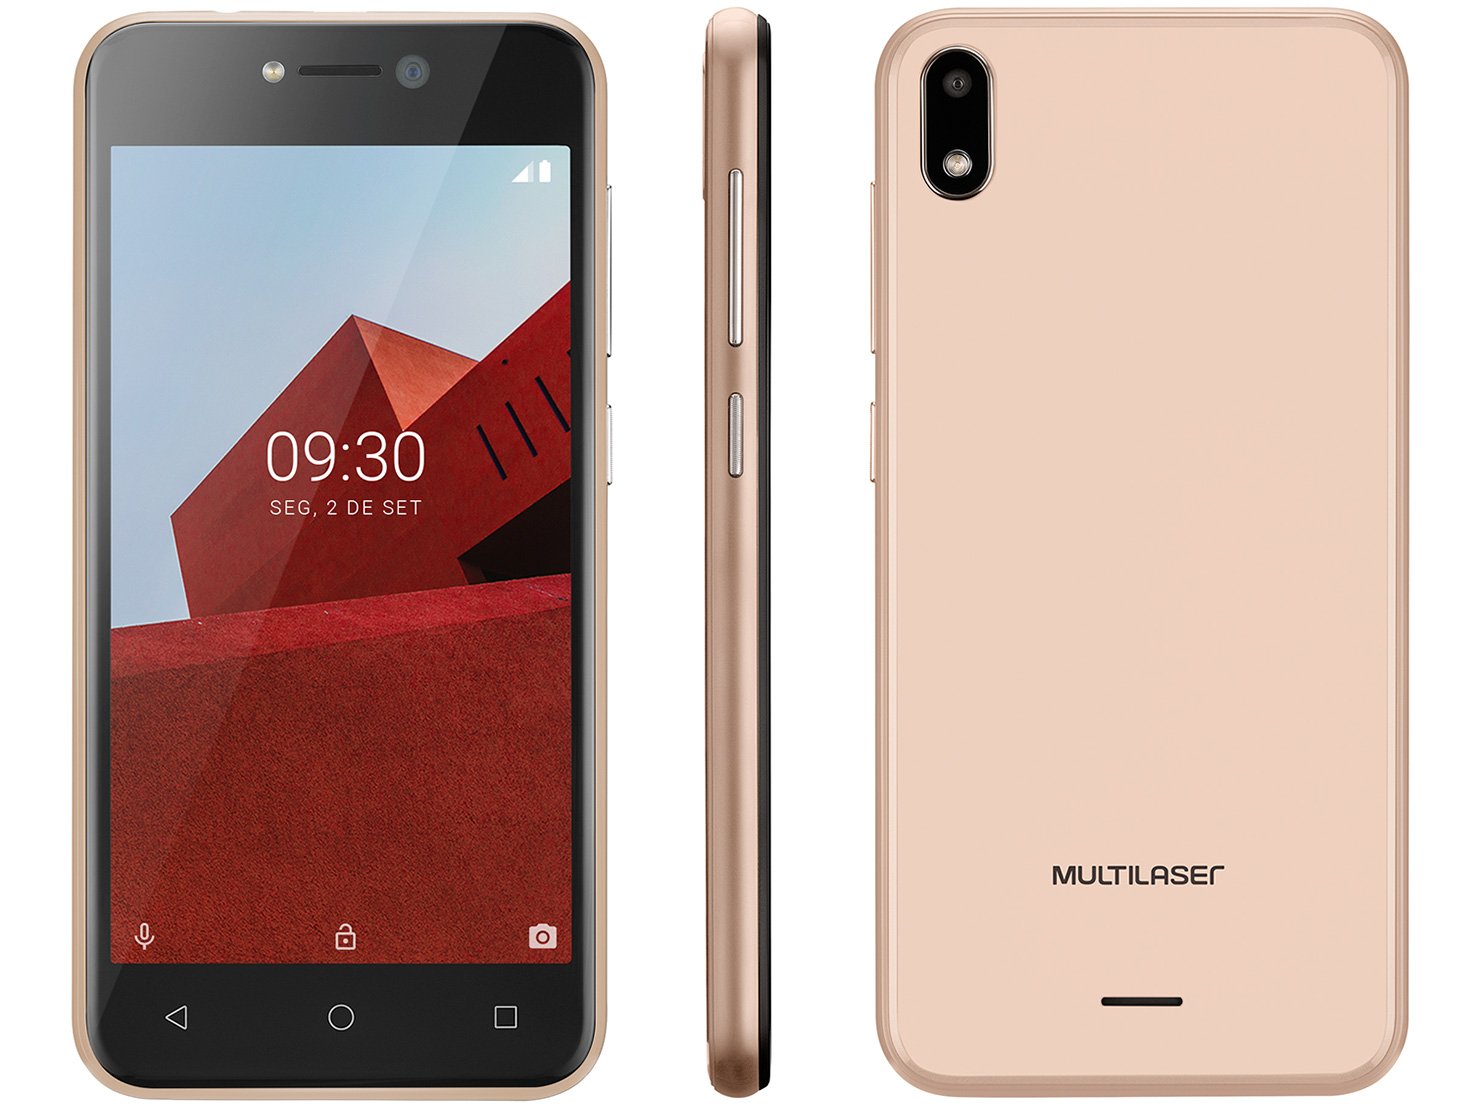 Smartphone Multilaser E P9129 Dourado com 32GB, Tela 5”, Android 8.1, Dual Chip, Câmera 5MP, 3G e Processador Quad core